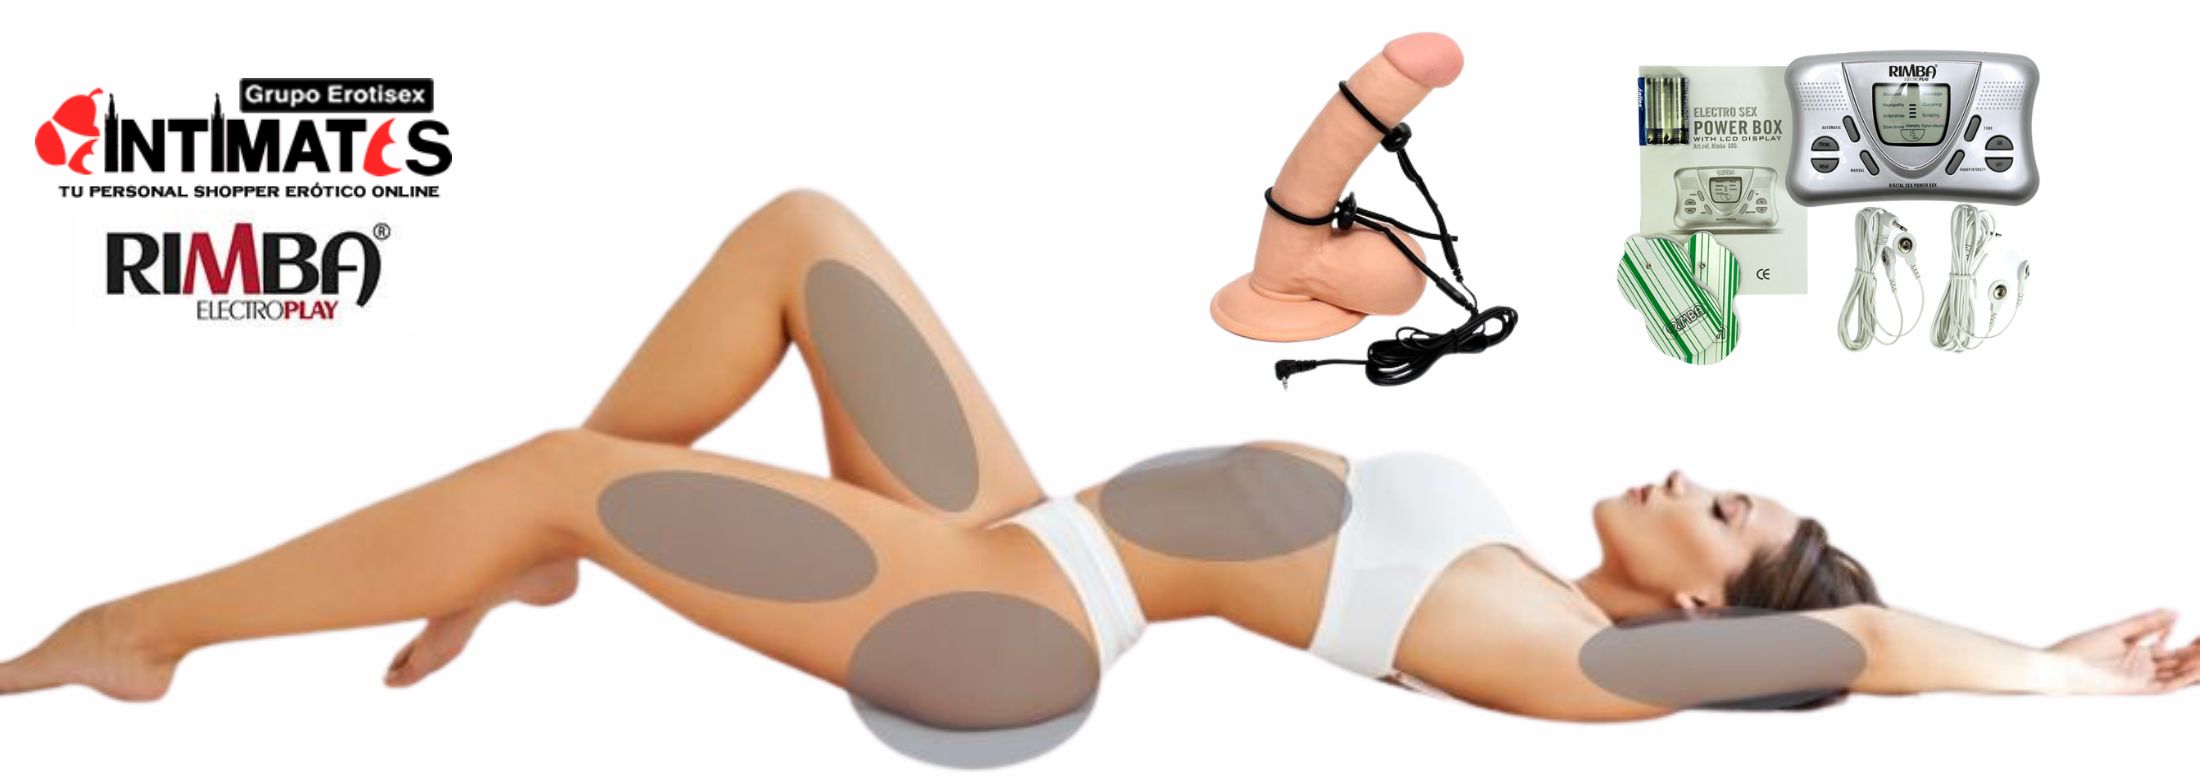 Rimba ElectroPlay te ofrece juguetes para vivir noches de BDSM sin límite y que puedes adquirir en intimates.es "Tu Personal Shopper Erótico Online"